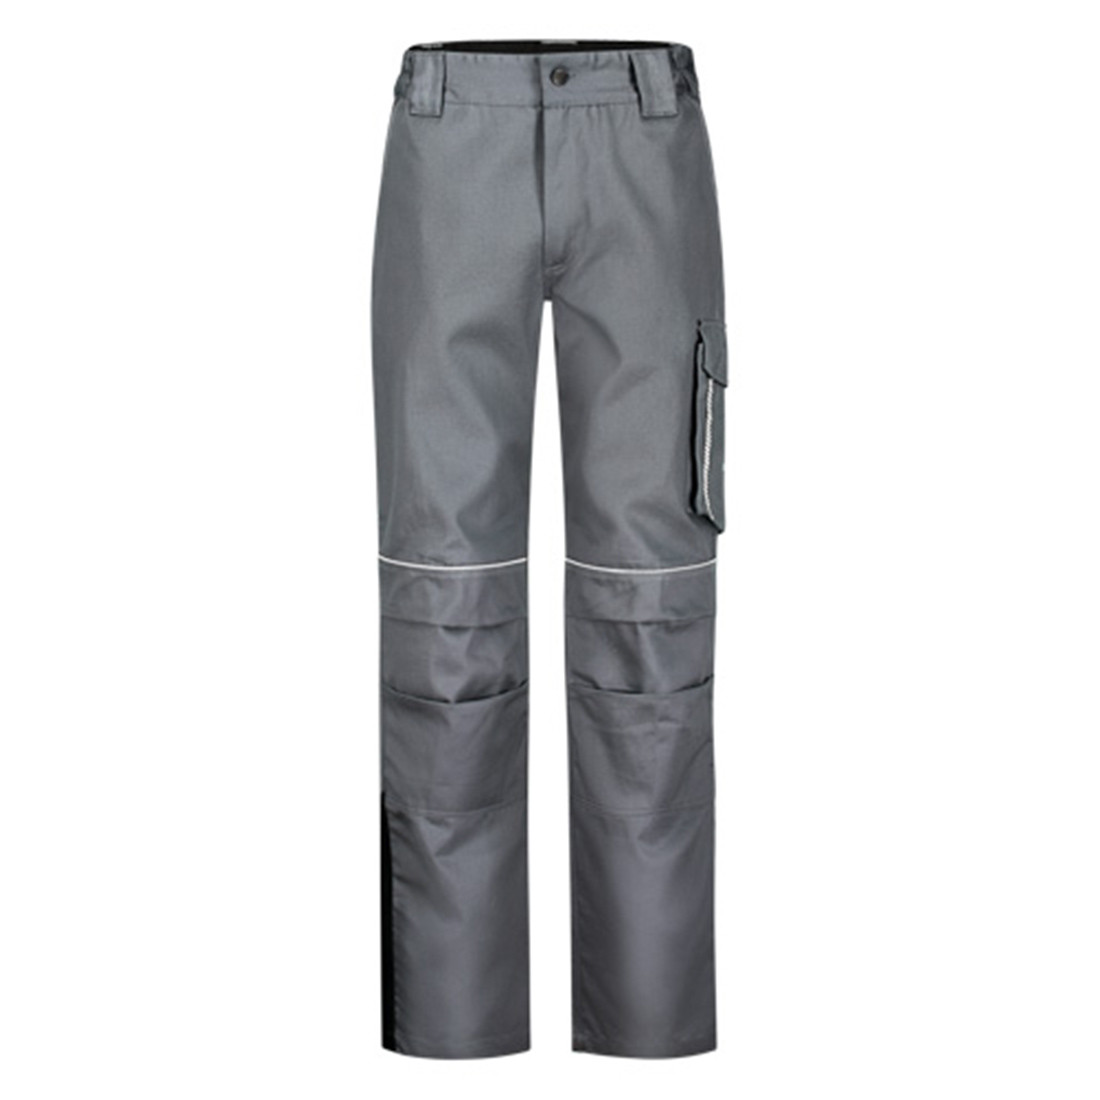 Pantaloni RAPTOR - Imbracaminte de protectie